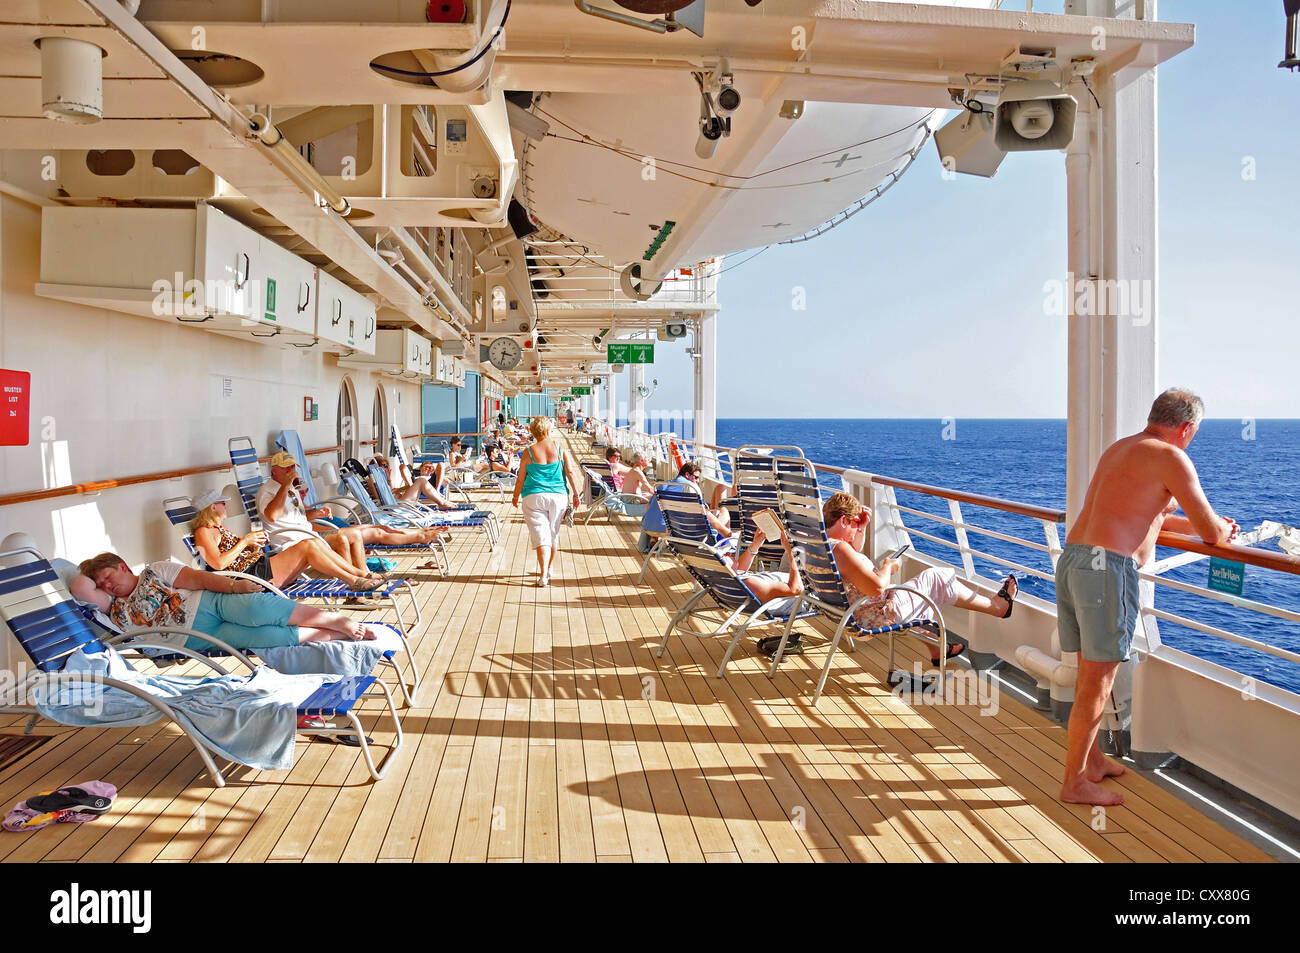 Passagiere, die zum Entspannen in der Sonne auf dem Deck der Royal Caribbean "Grandeur of the Seas" Kreuzfahrt Schiff, Adria, Mittelmeer, Europa Stockfoto